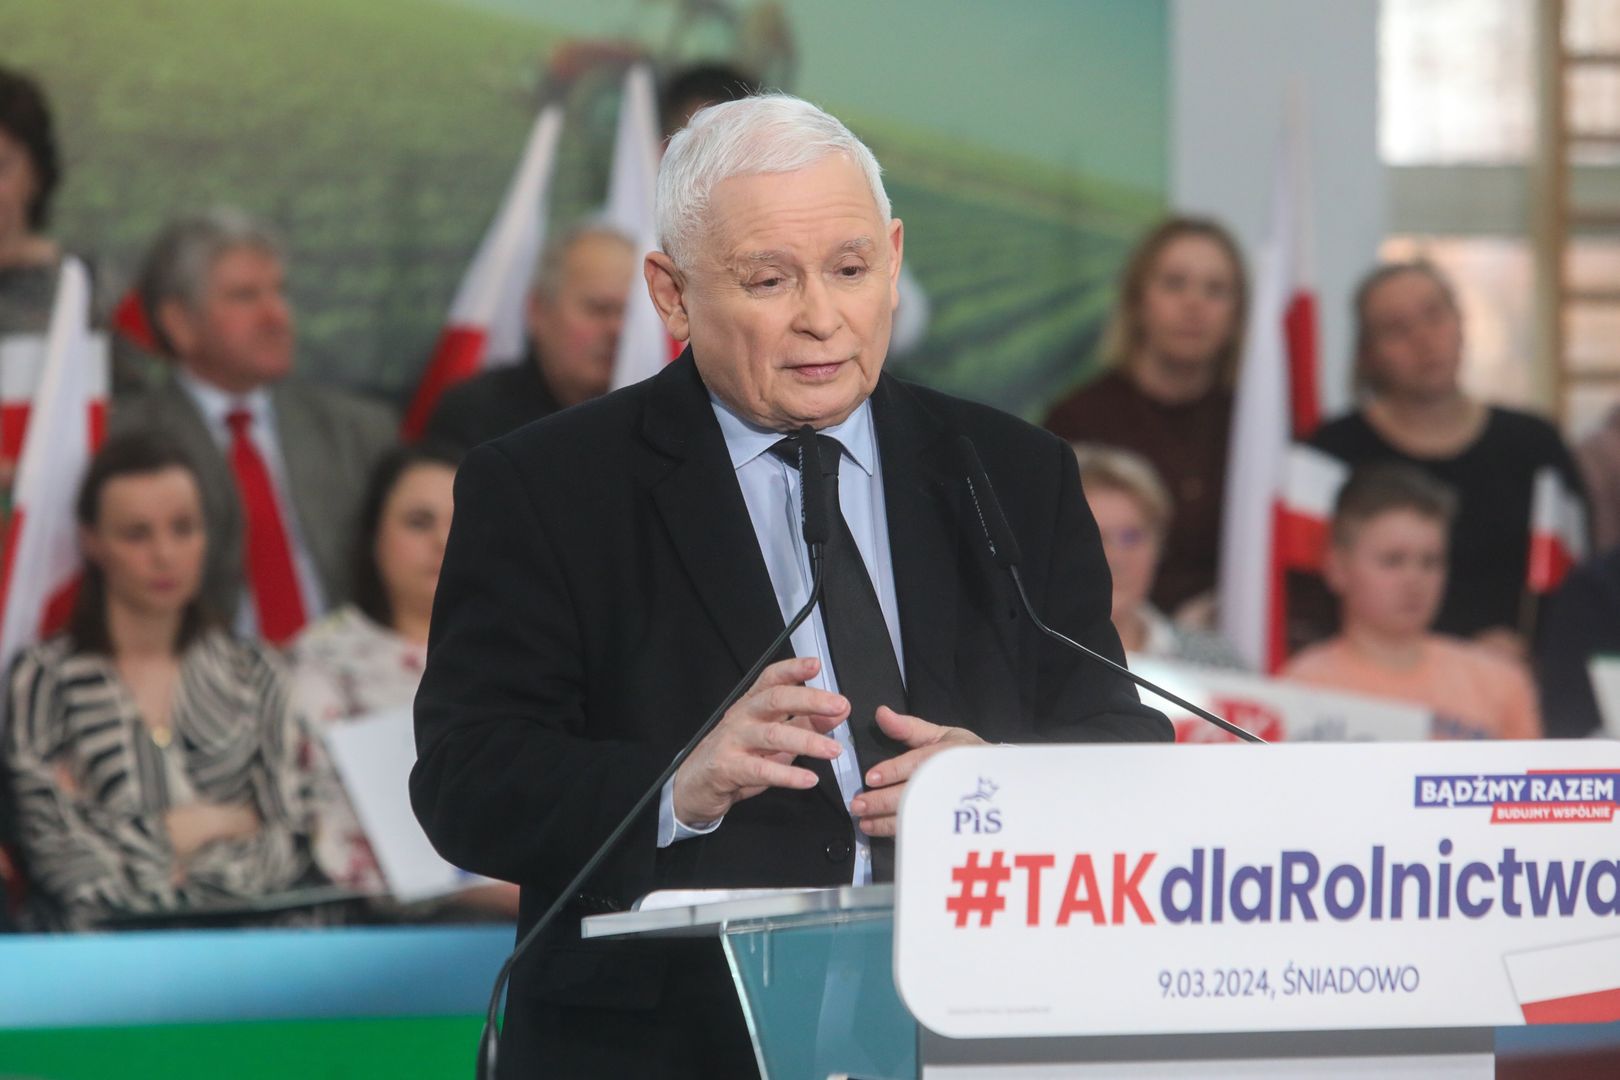 Giertych chce badać Kaczyńskiego wariografem. W tle katastrofa smoleńska